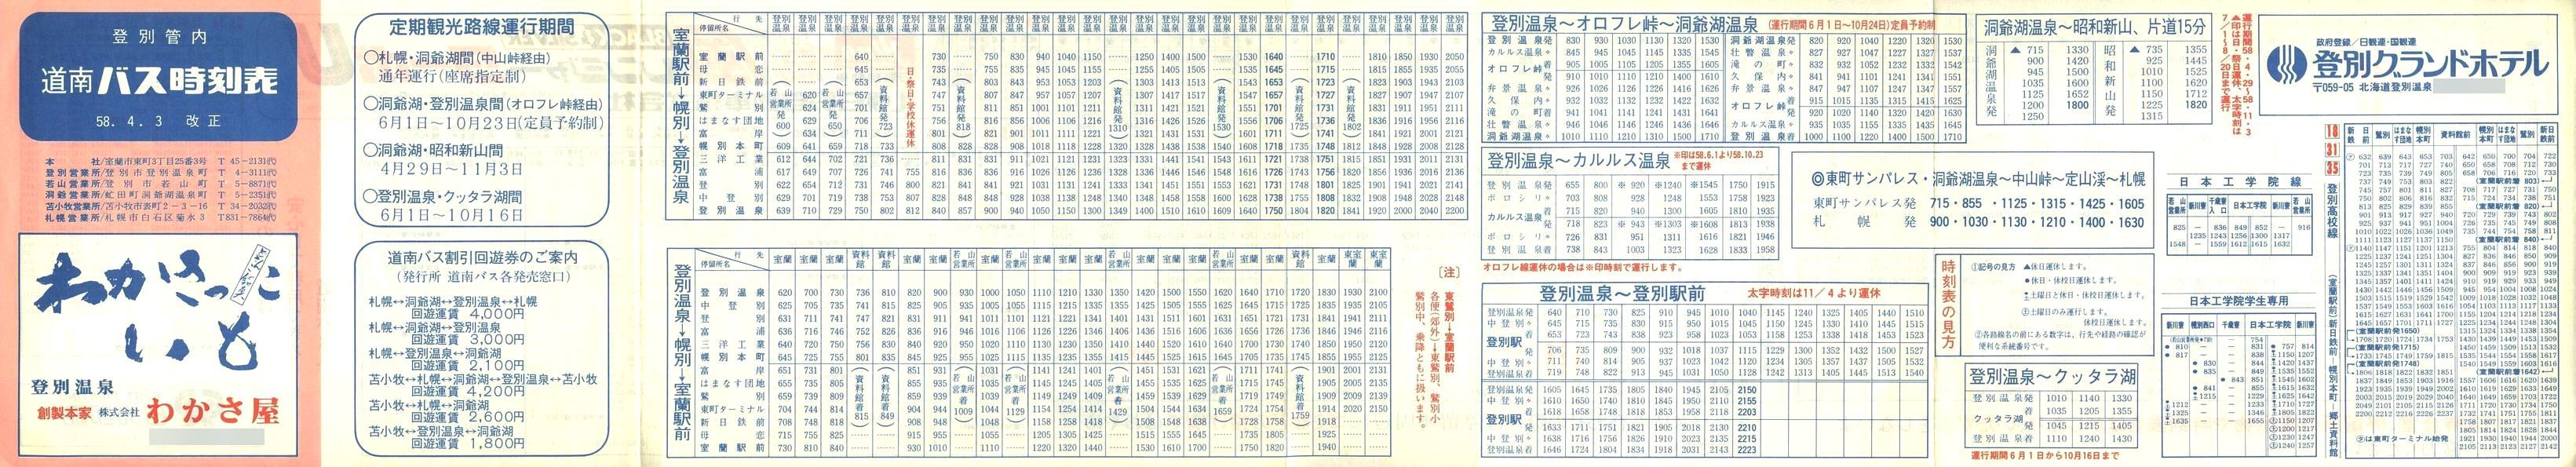 1983-04-03改正_道南バス_登別管内時刻表表面